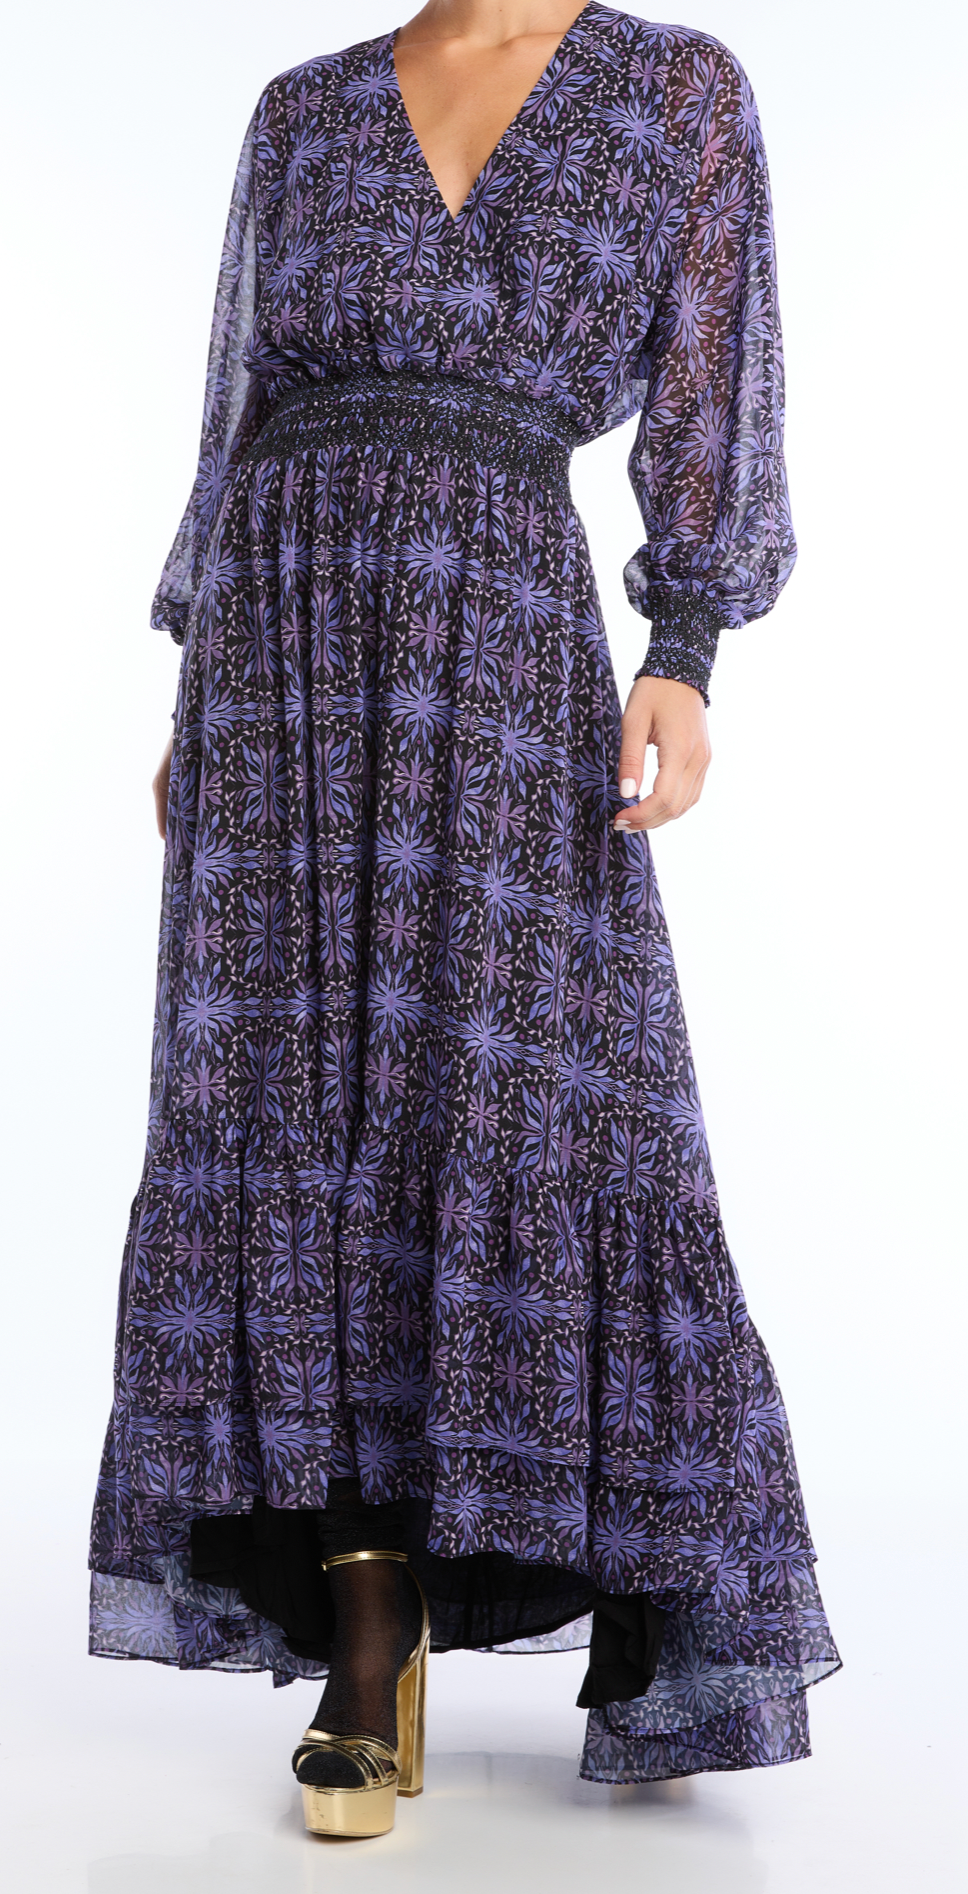 Allison Celine Dress in Purple Kaleidoscope